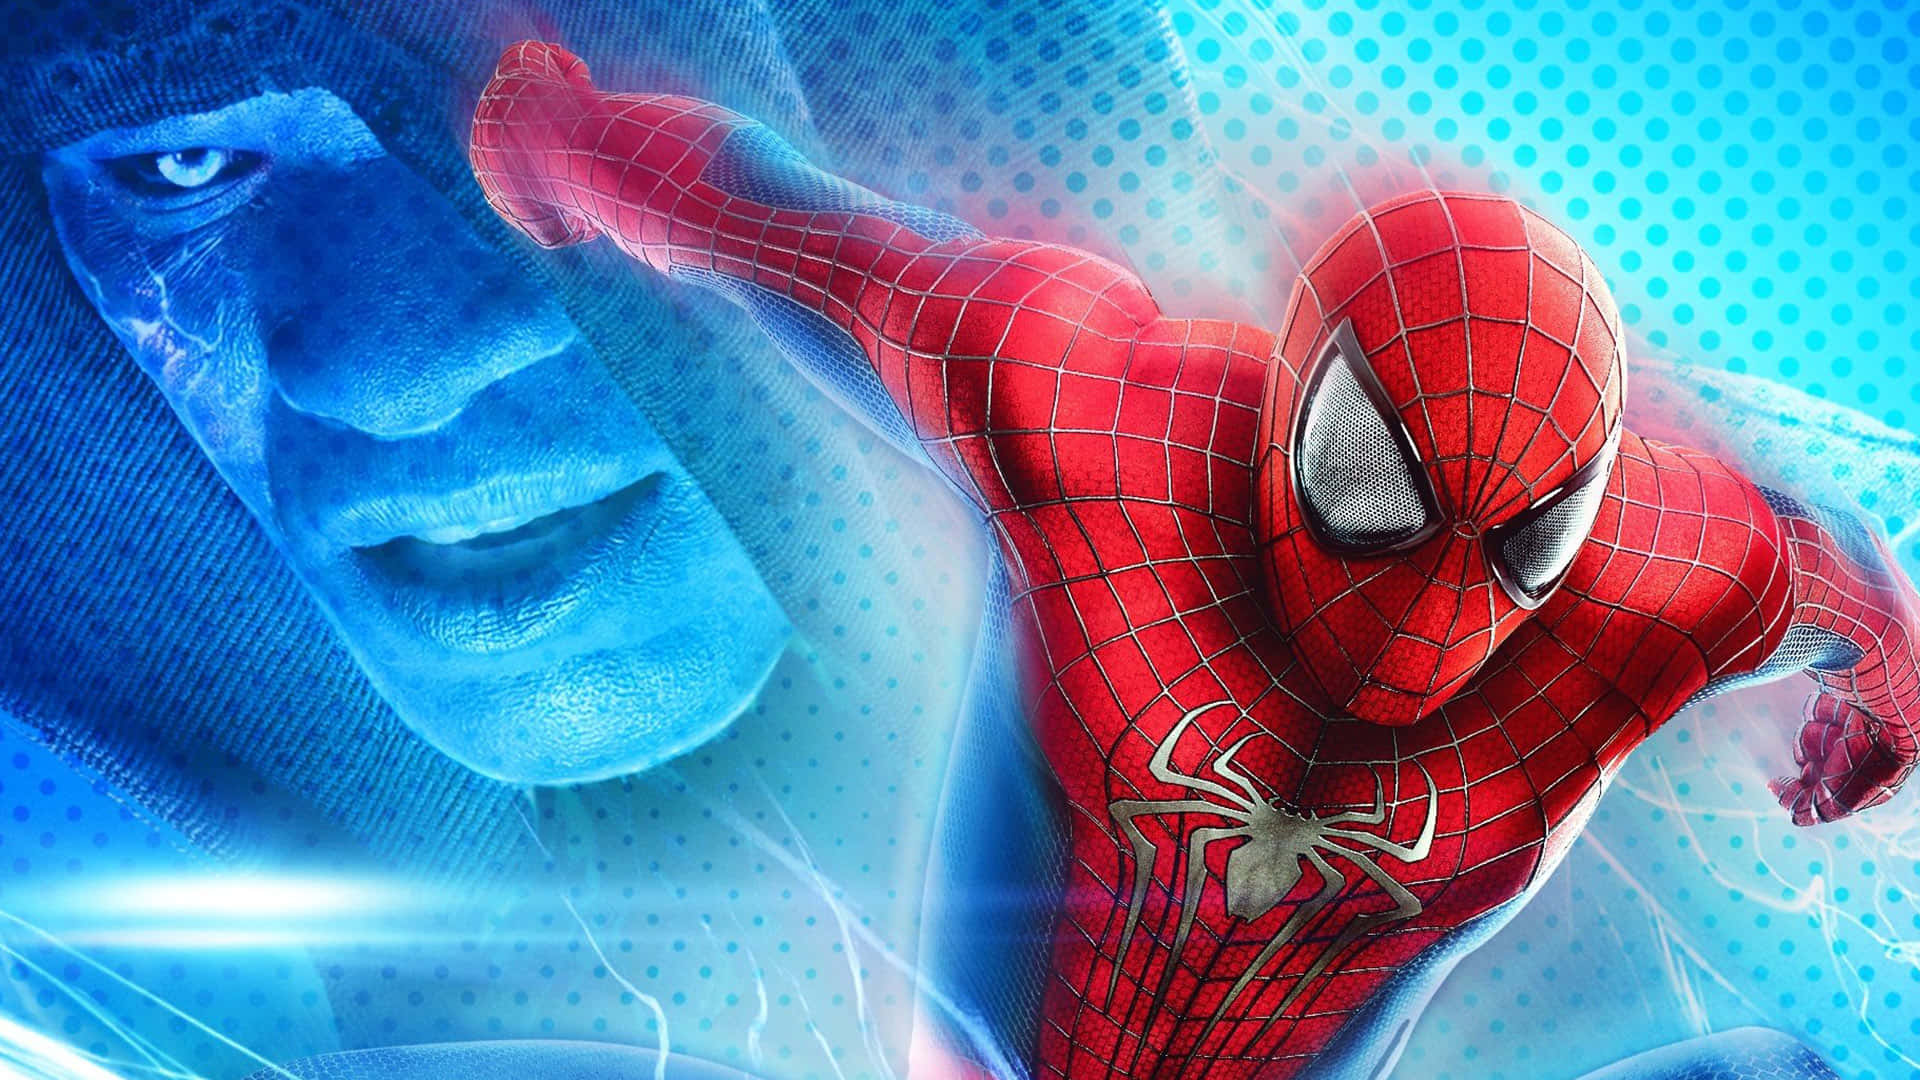 Человек паук части с эндрю. The amazing Spider-man 2 (новый человек — паук 2). Эндрю Гарфилд человек паук. Человек-паук с Эндрю Гарфилдом 2. Эндрю Гарфилд человек паук 2.